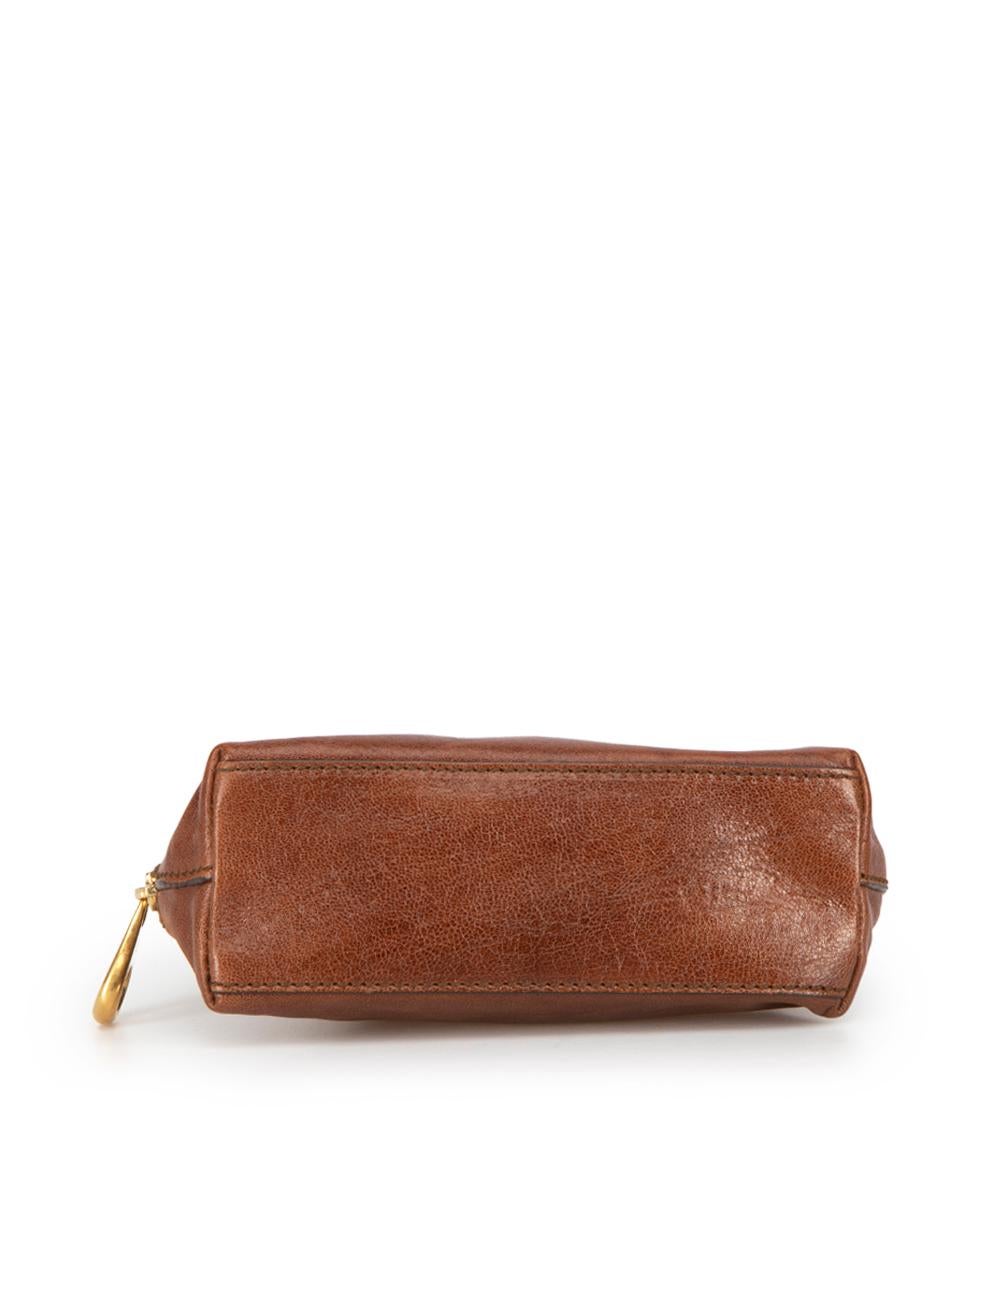 Alexander McQueen Women's Brown Leather Cosmetic Bag 1